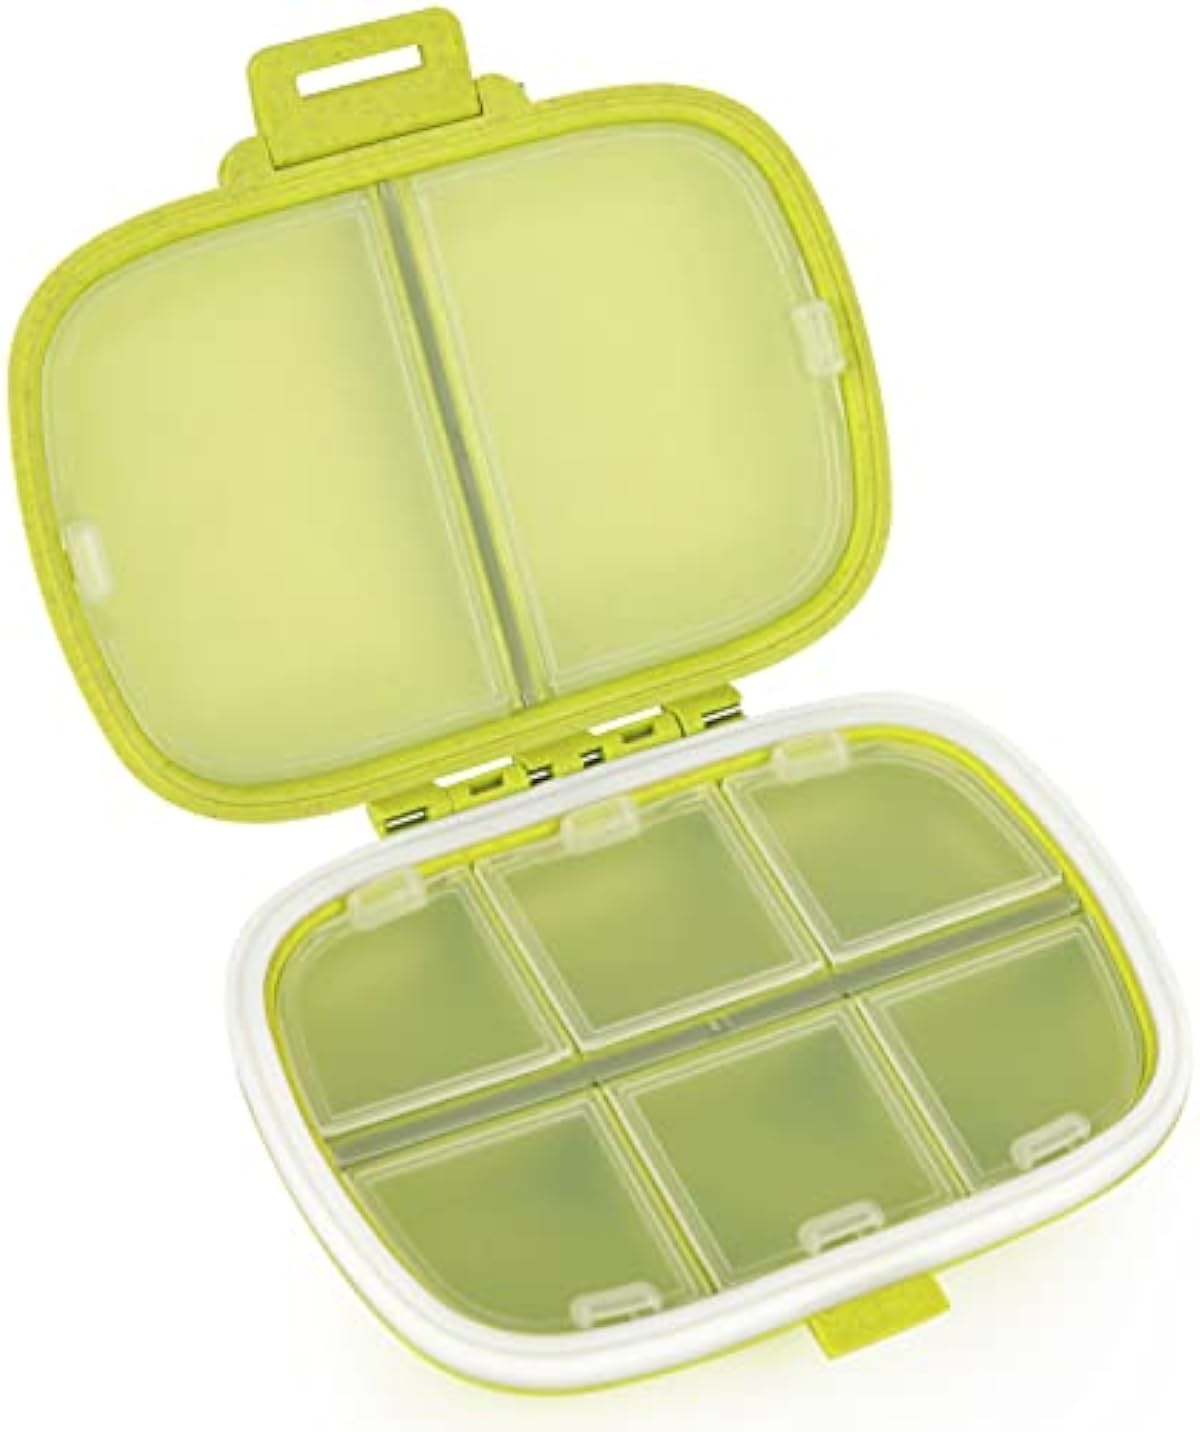 Travel Pill Organizer 8 Compartments Portable Pill Box Medicine Organizer Small Daily Pill Case Medicine Vitamin Container for Pocket Purse (Green)